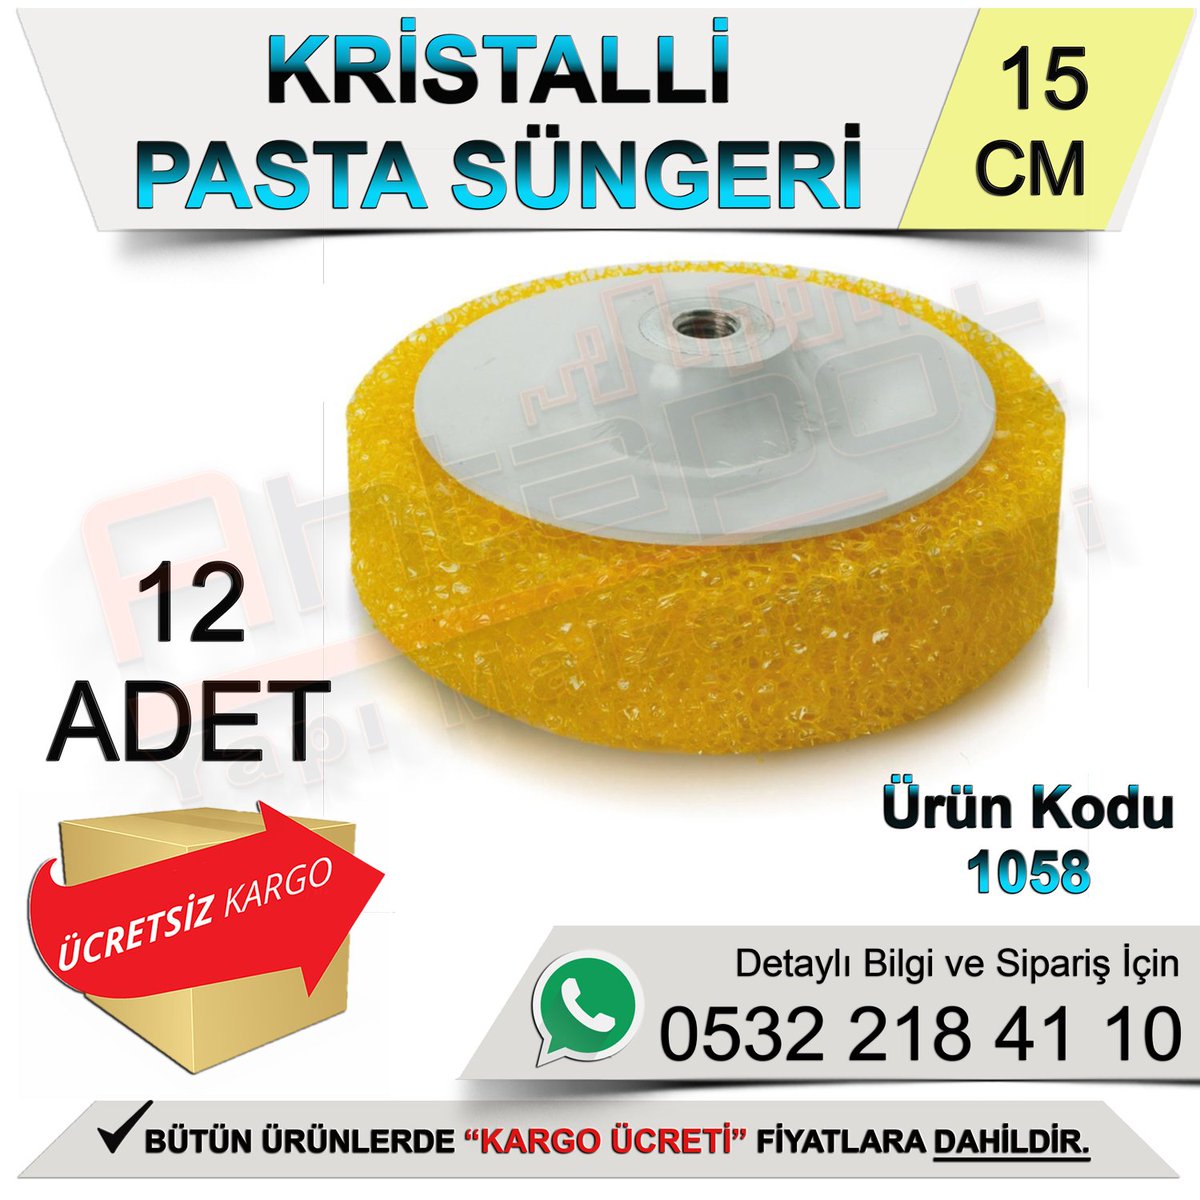 Oto Pasta Cila Antalya  - Bauhaus.cOm.tR�dE En Uygun Fiyatlarda Taksitli Alışveriş Yapabilirsiniz.